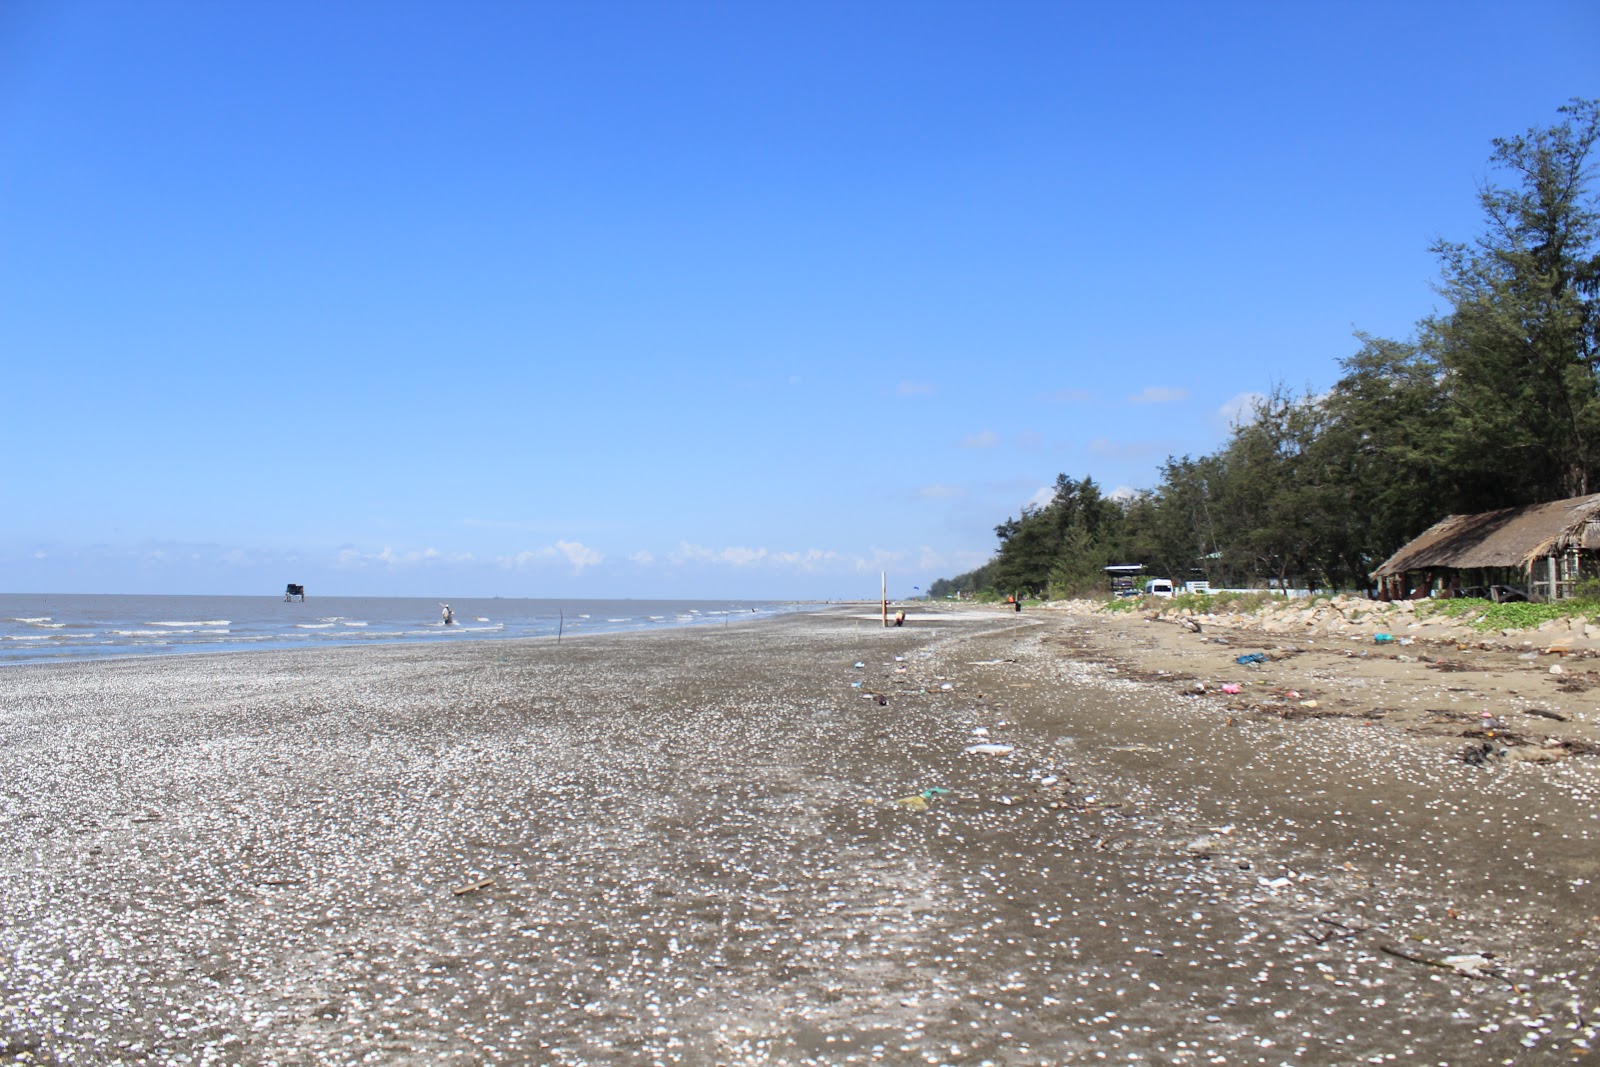 Fotografija Can Gio Beach nahaja se v naravnem okolju